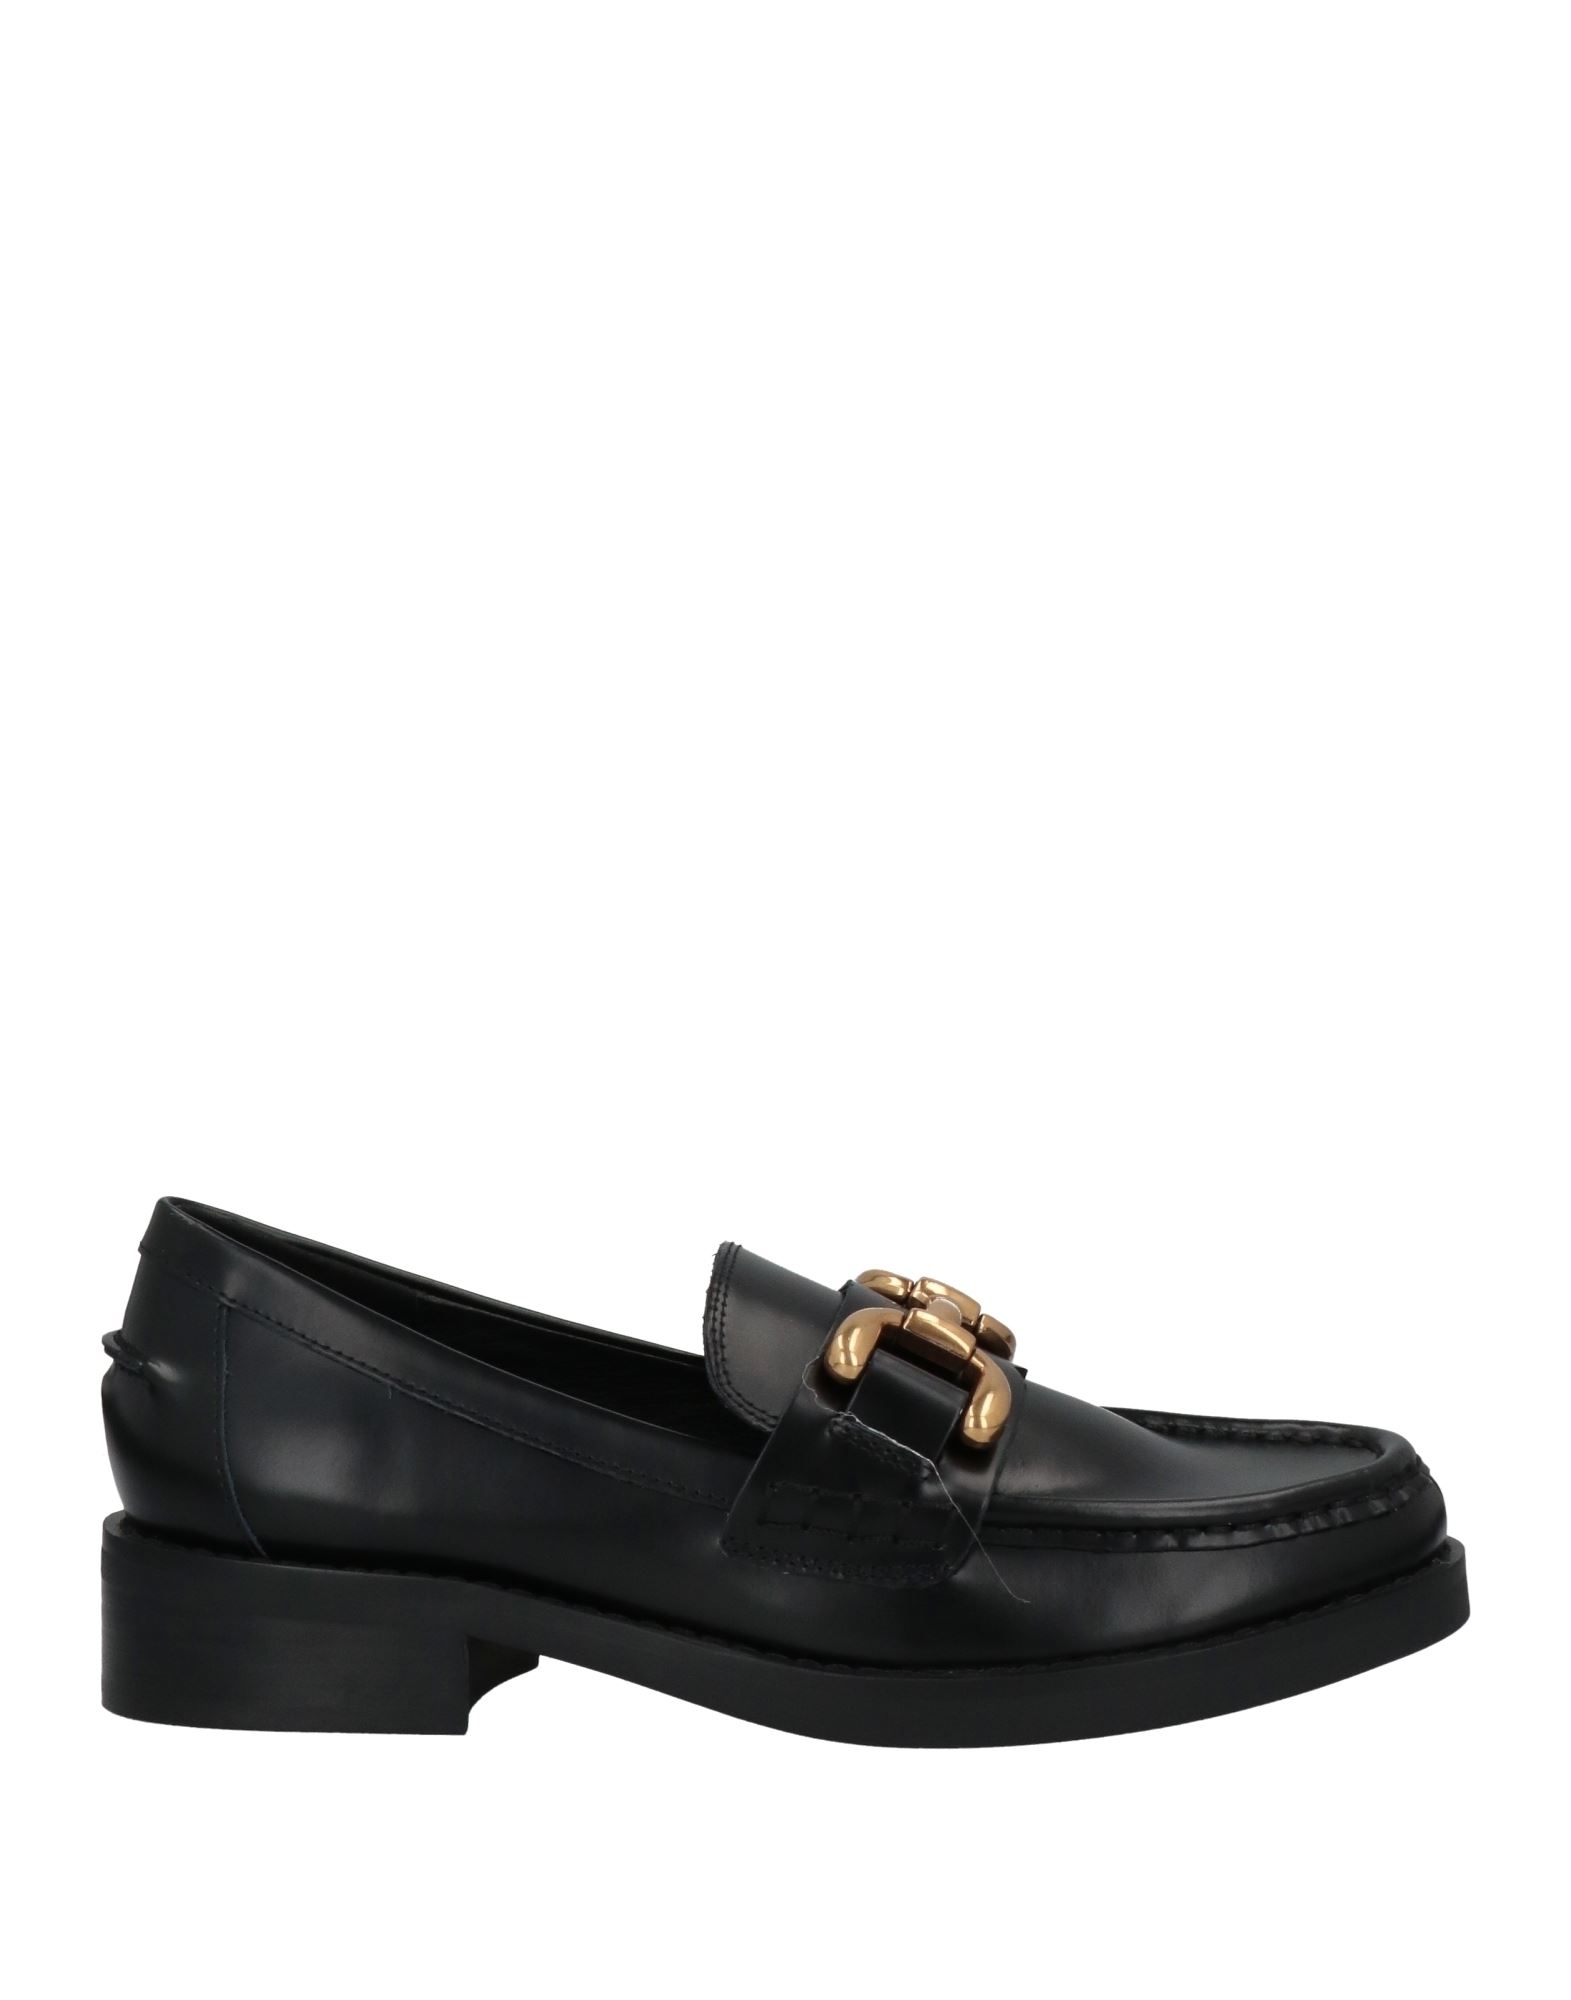 Shop Bibi Lou Woman Loafers Black Size 8 Soft Leather